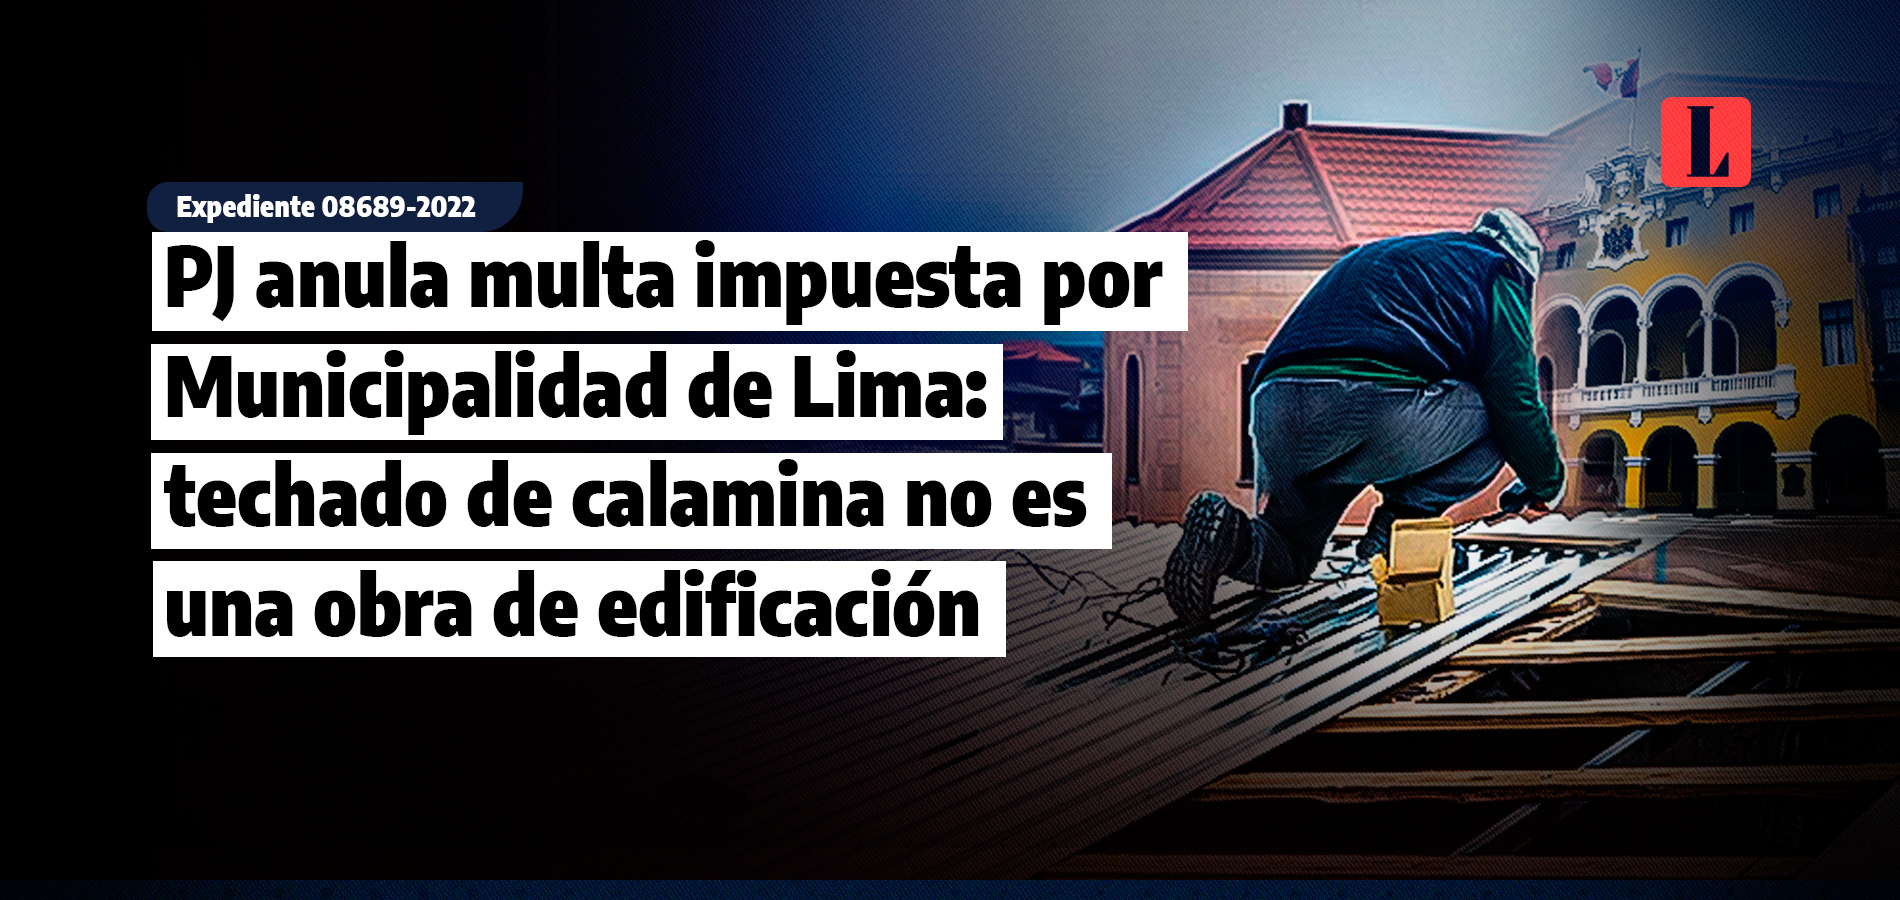 PJ anula multa impuesta por Municipalidad de Lima: techado de calamina no es una obra de edificación